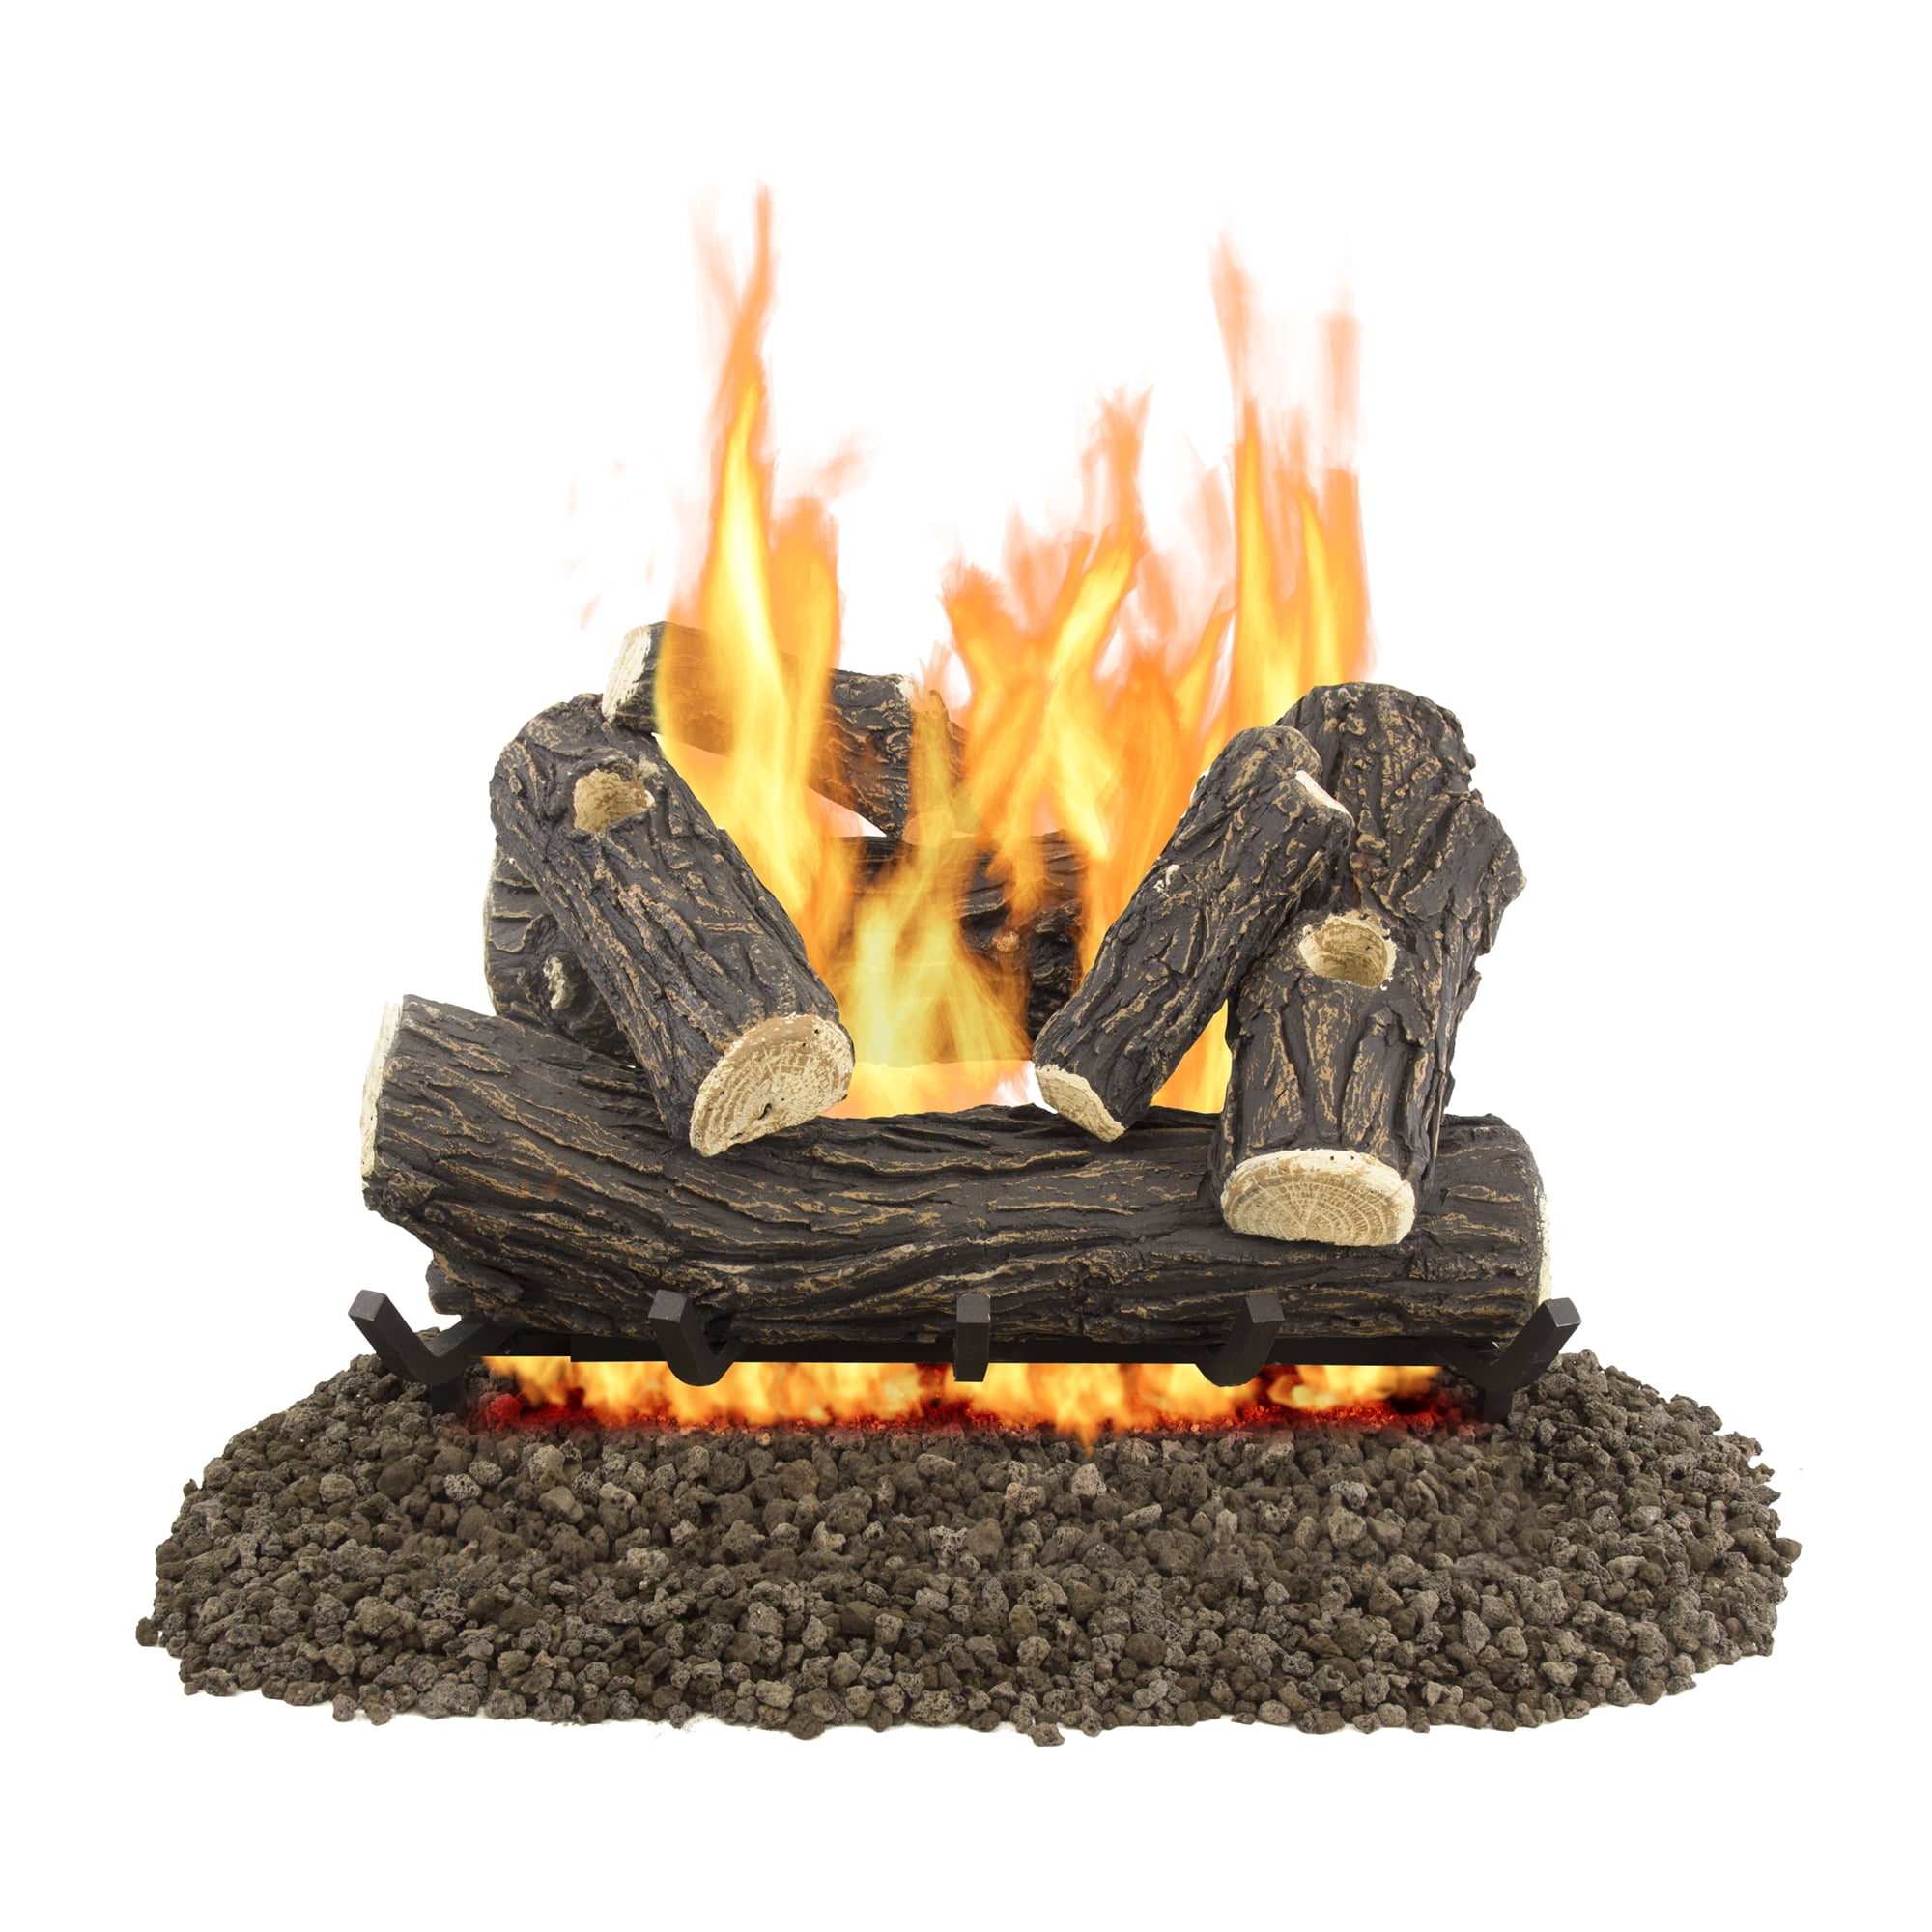 Premium Vented 18"inch Natural Gas Log Set Flame Burner Ember Glowing 45,000 BTU